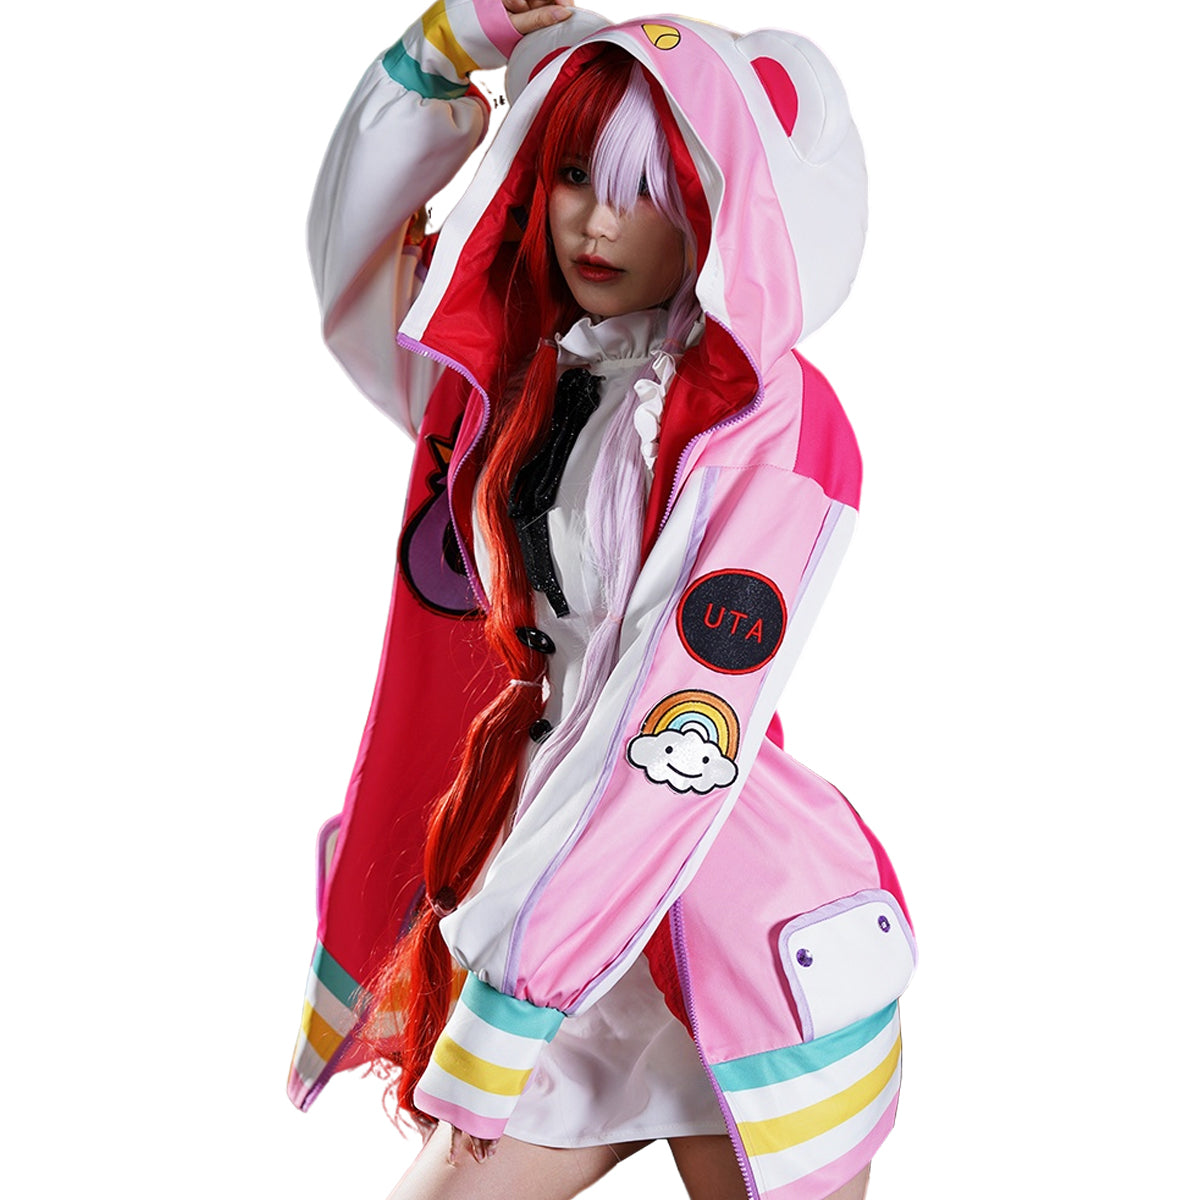 【在庫品】HOLOUN 世界の歌姫ウタコスプレ 衣装 ONE PI Cosplay FILM RED UTA ハロウィン イベント アニメ 文化祭